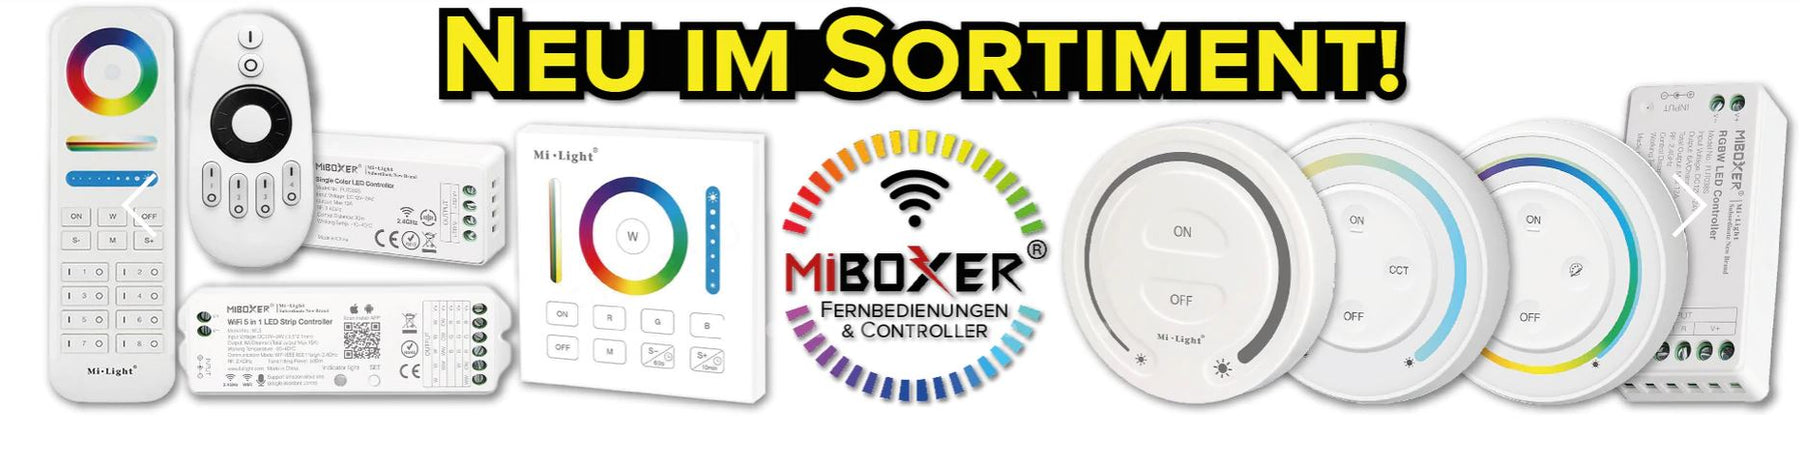 MiBoxer Sortiment stark überarbeitet & erweitert - vielfältiges Zubehör für ihre LED Streifen und MiLight Leuchtmittel